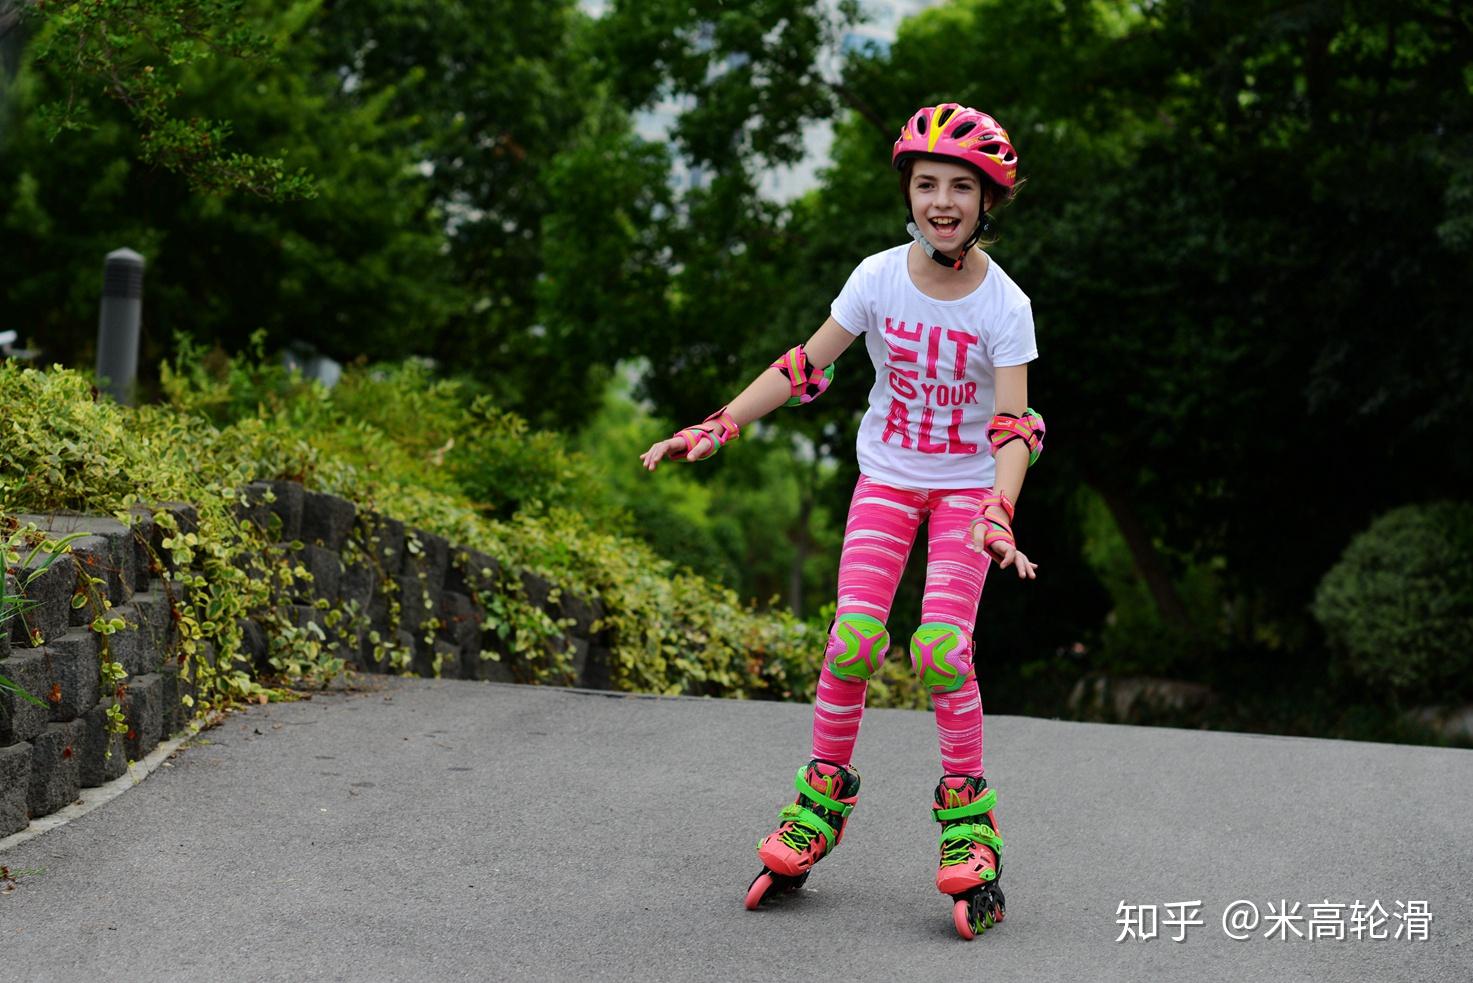 快乐的小女孩玩轮滑-蓝牛仔影像-中国原创广告影像素材